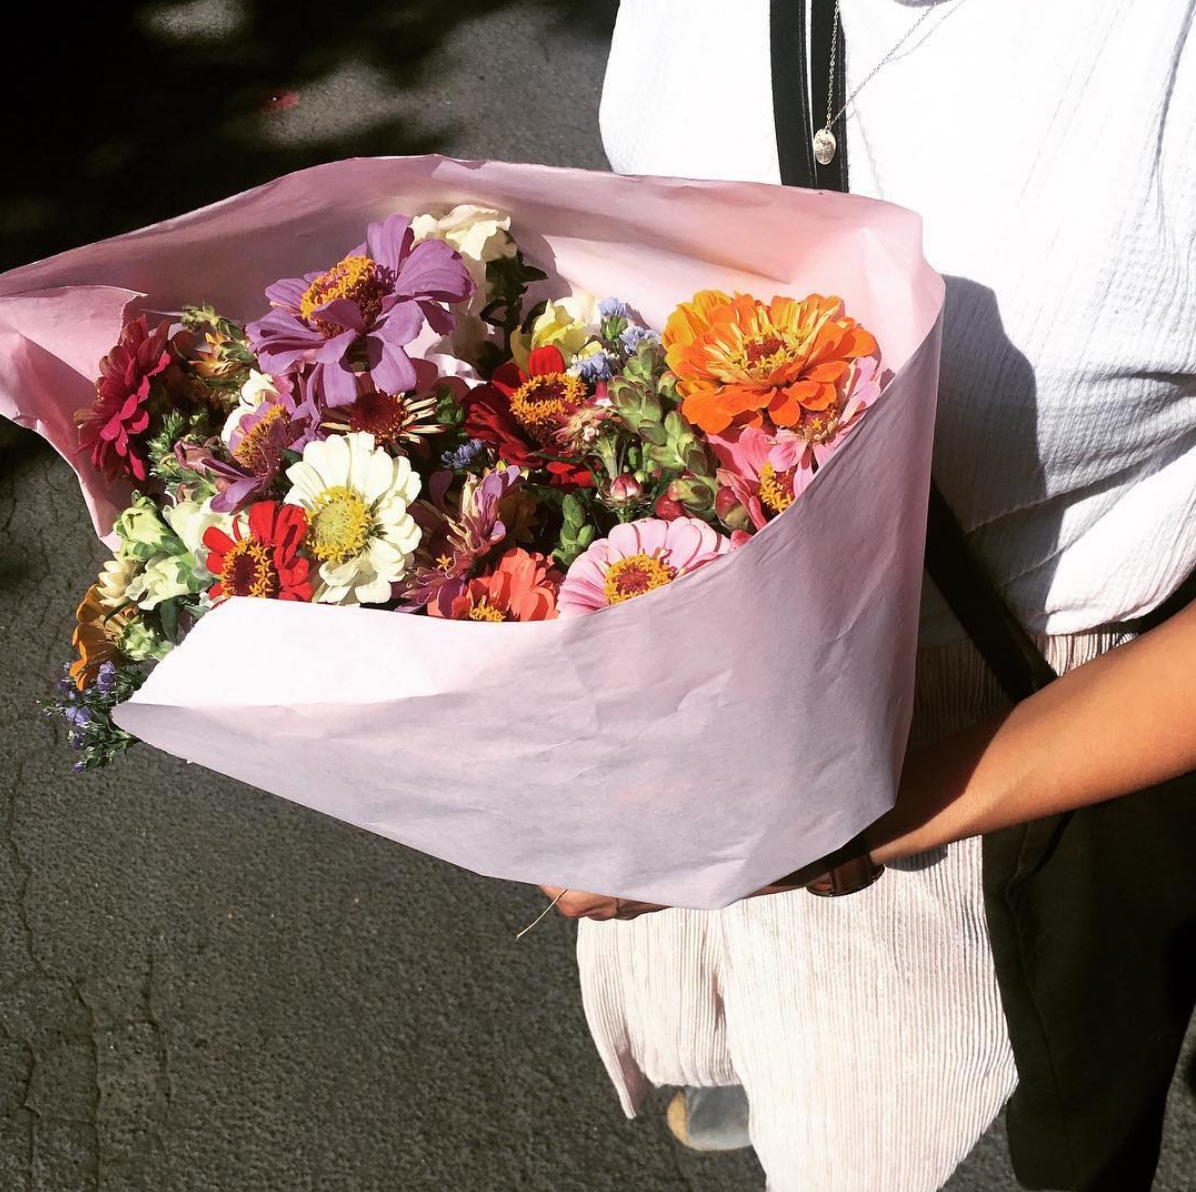 Jeden Freitag frische Blumen vom Markt! 💐 #FreshFlowerFriday #flowerpower #flowers #Blumen